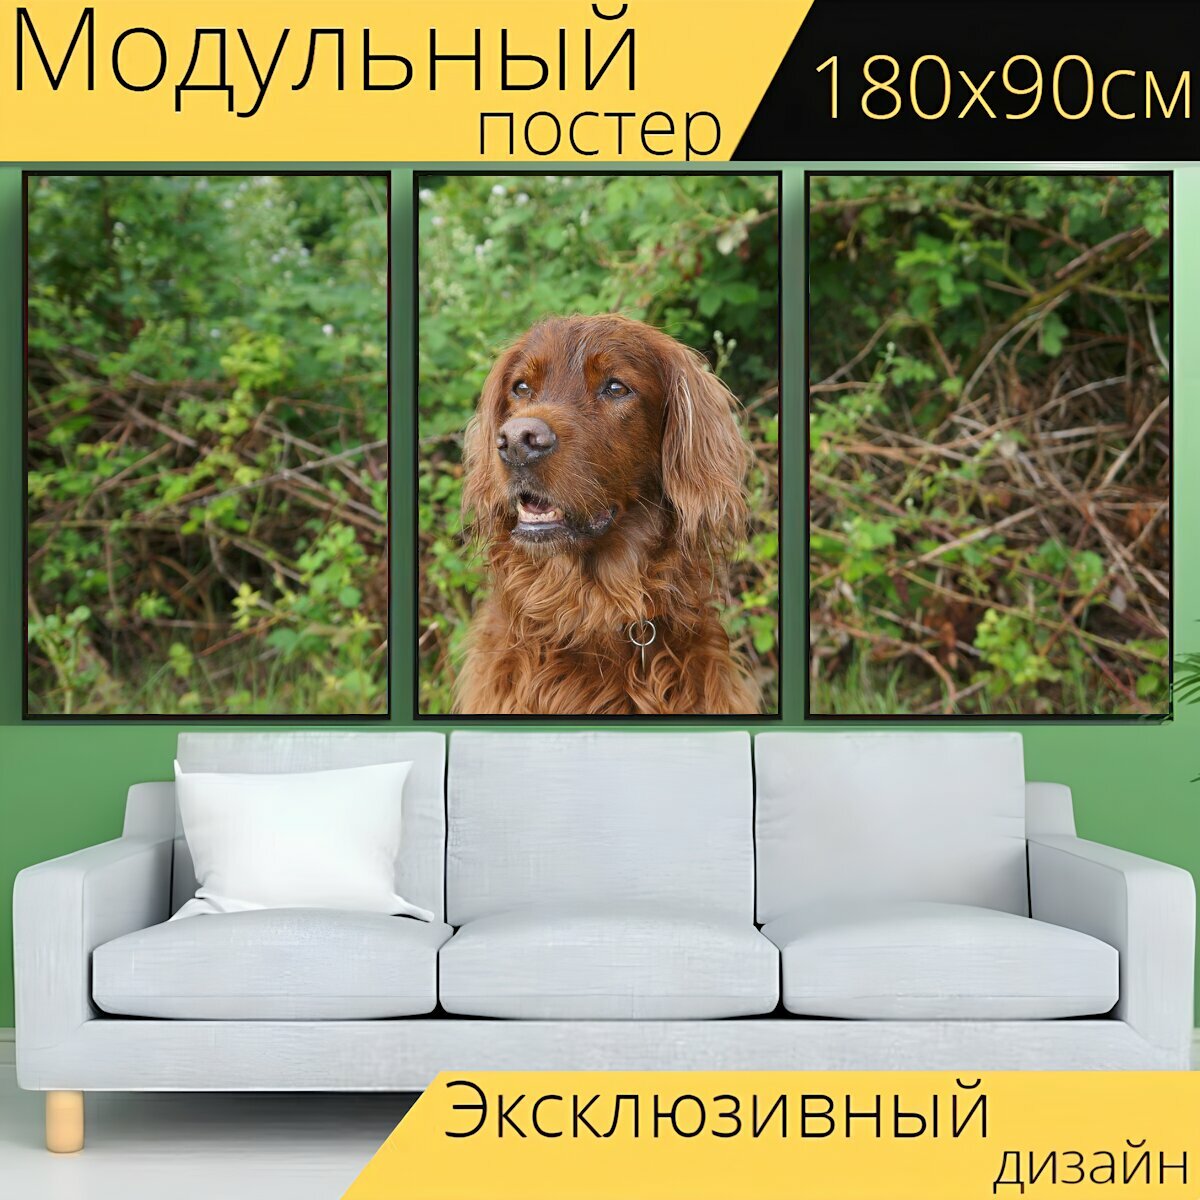 Модульный постер "Собака, ирландский сеттер, животные" 180 x 90 см. для интерьера